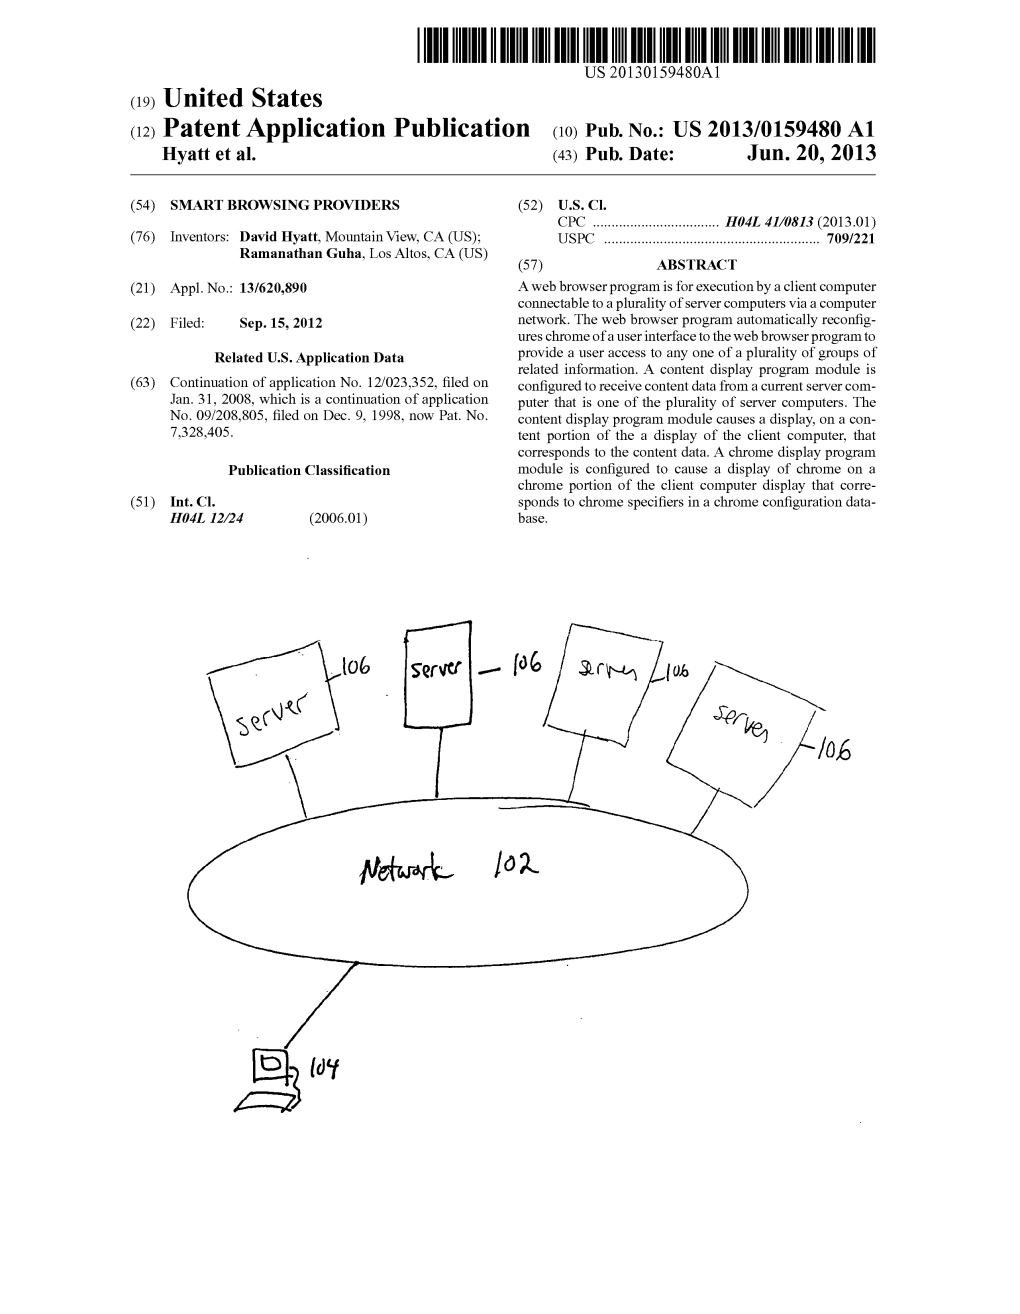 Patent Application Publication (10) Pub. No.: US 2013/0159480 A1 Hyatt Et Al